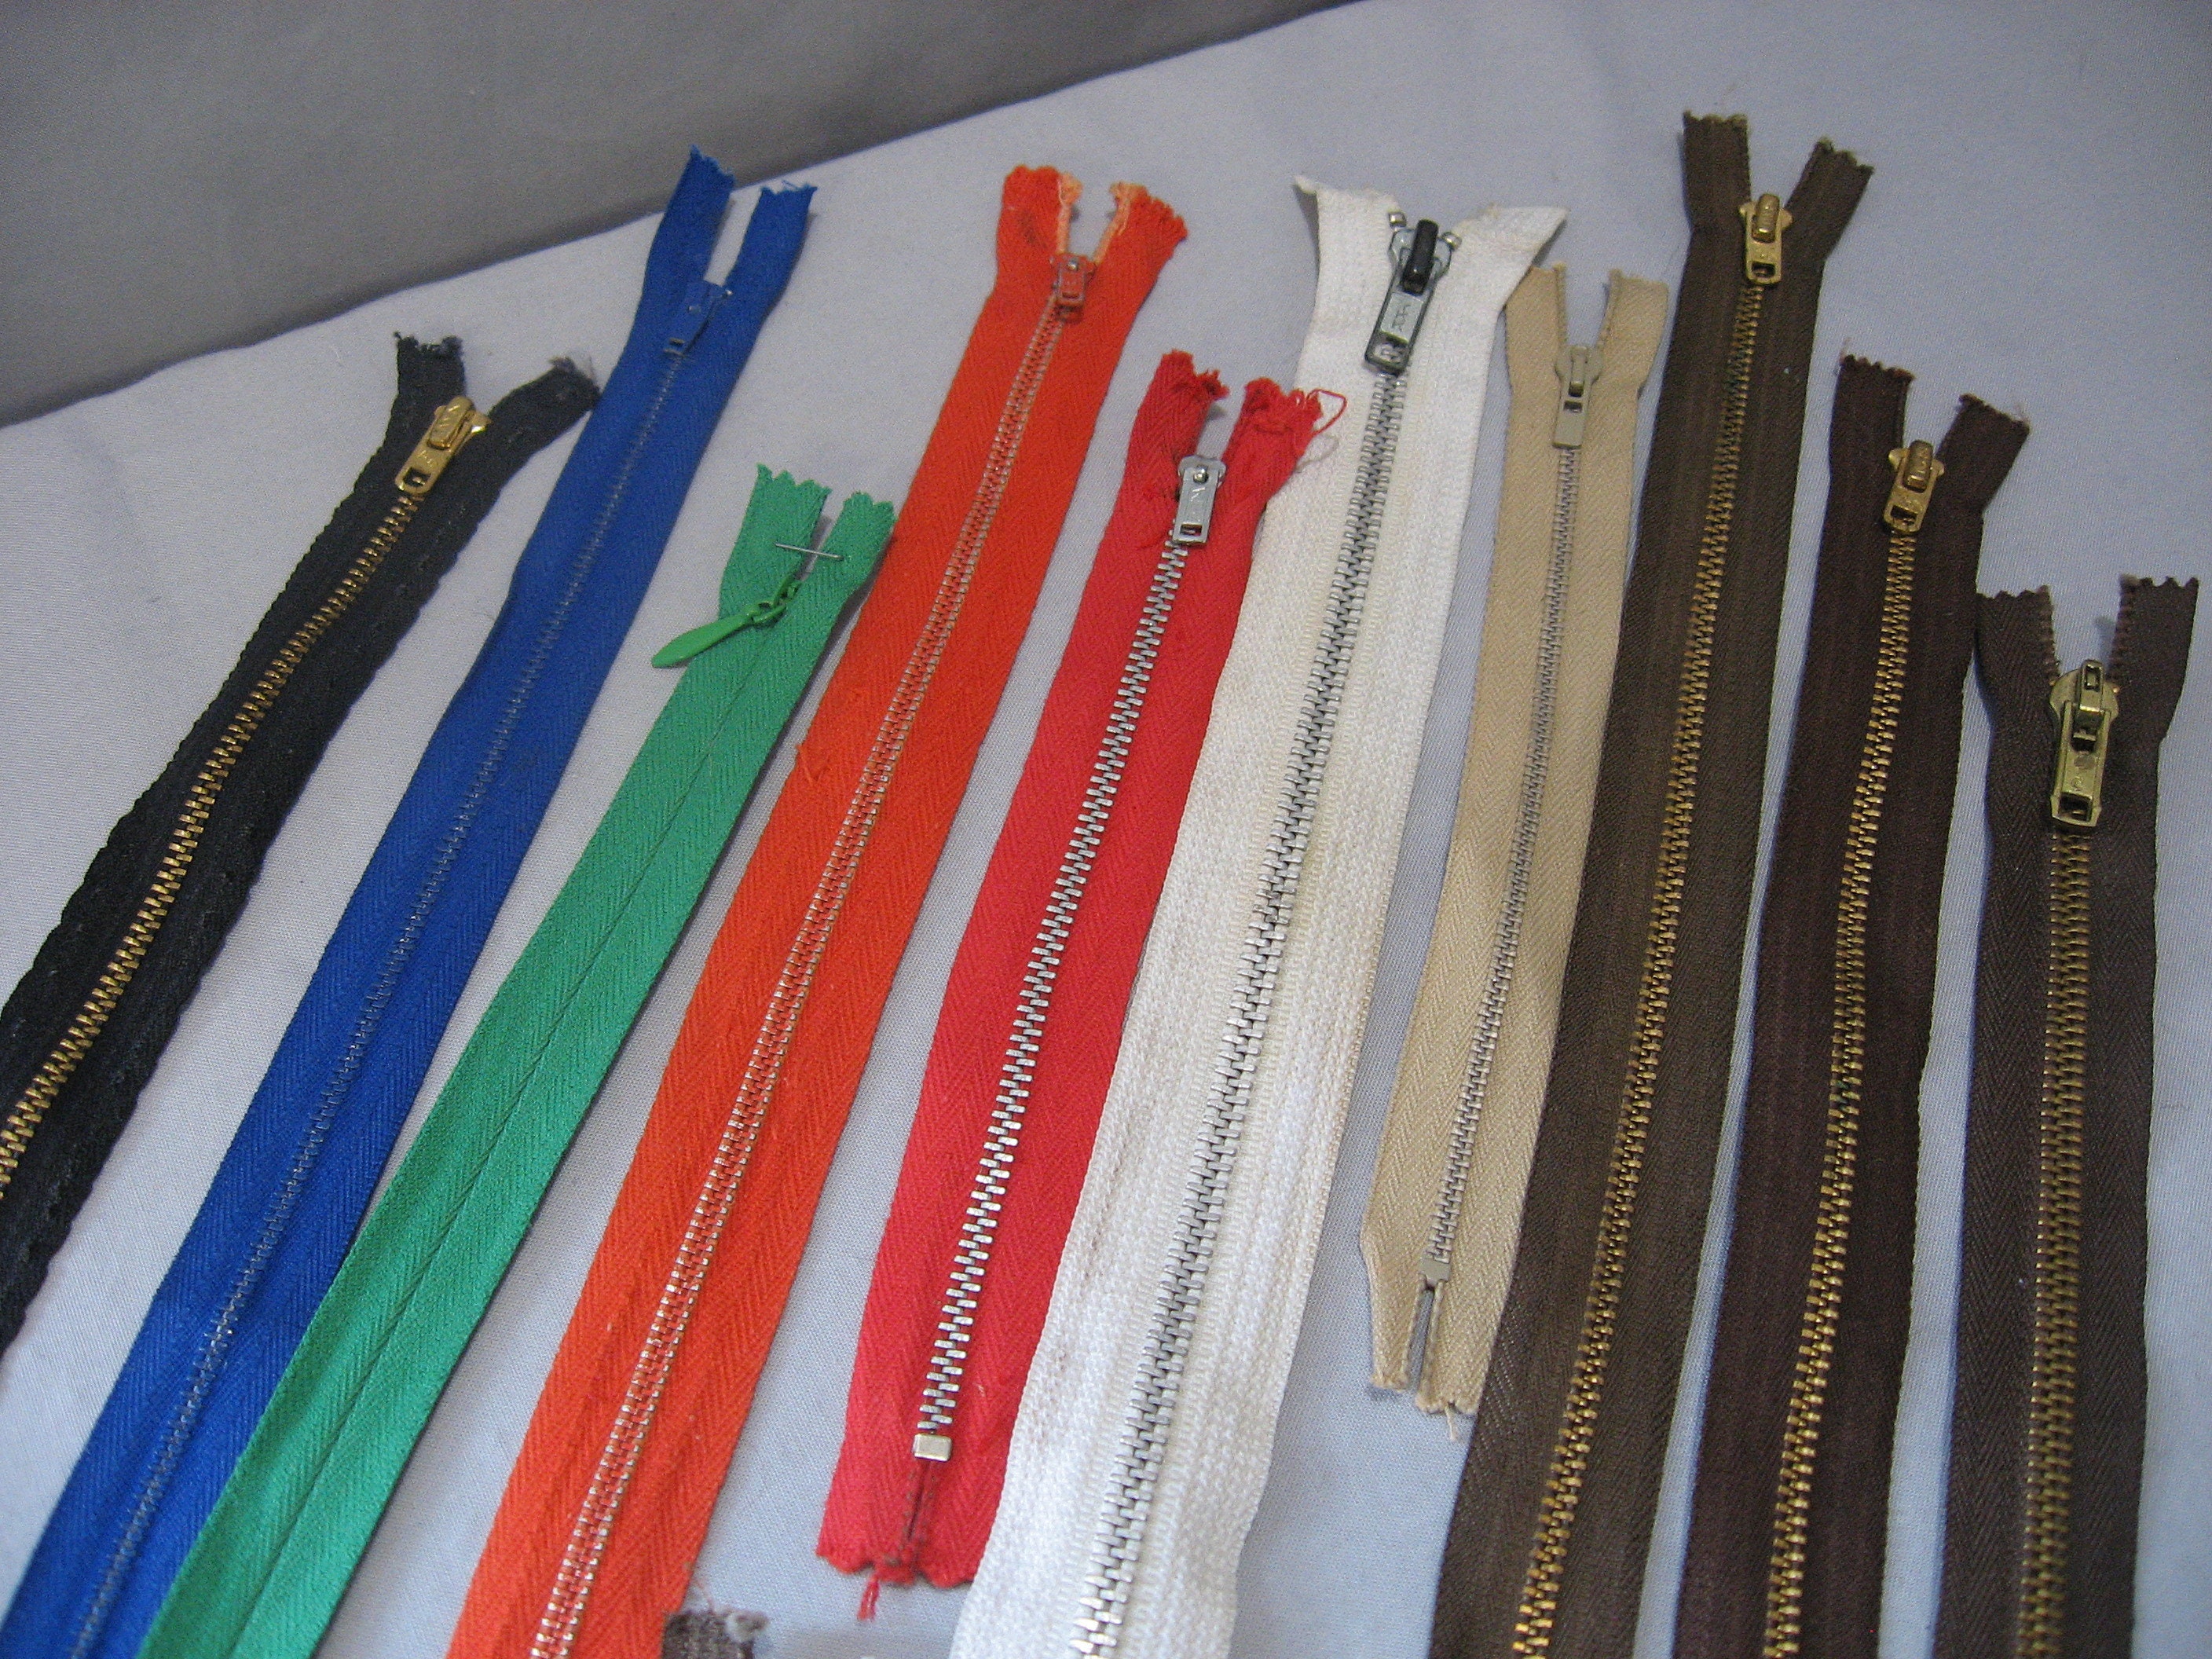 50 Assorted Zippers 7 Inch Zipper. YKK and Talon Zippers Bulk